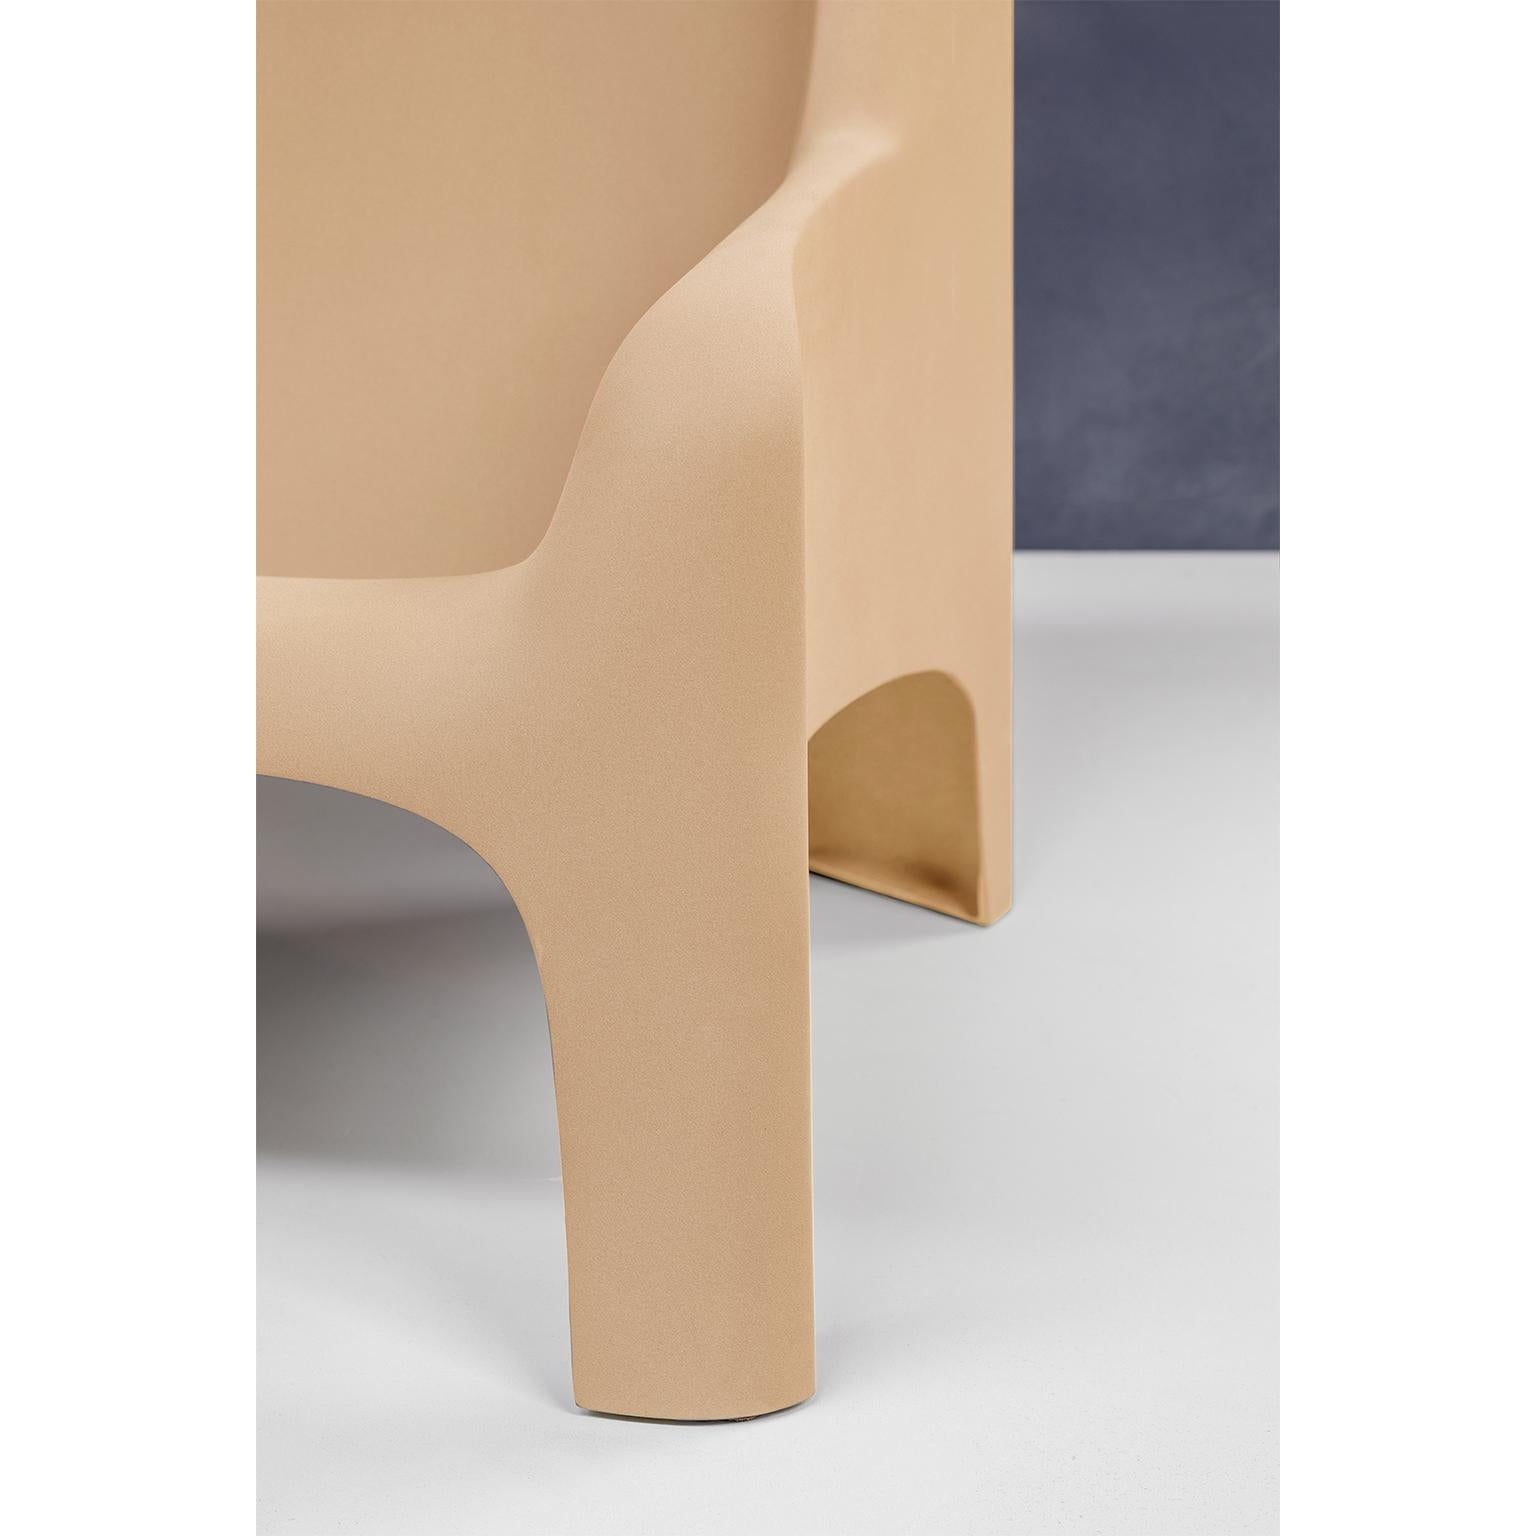 Italian Gaia Armchair by Arflex Designer Bartoli Transformed by Draga&Aurel Fiberglass